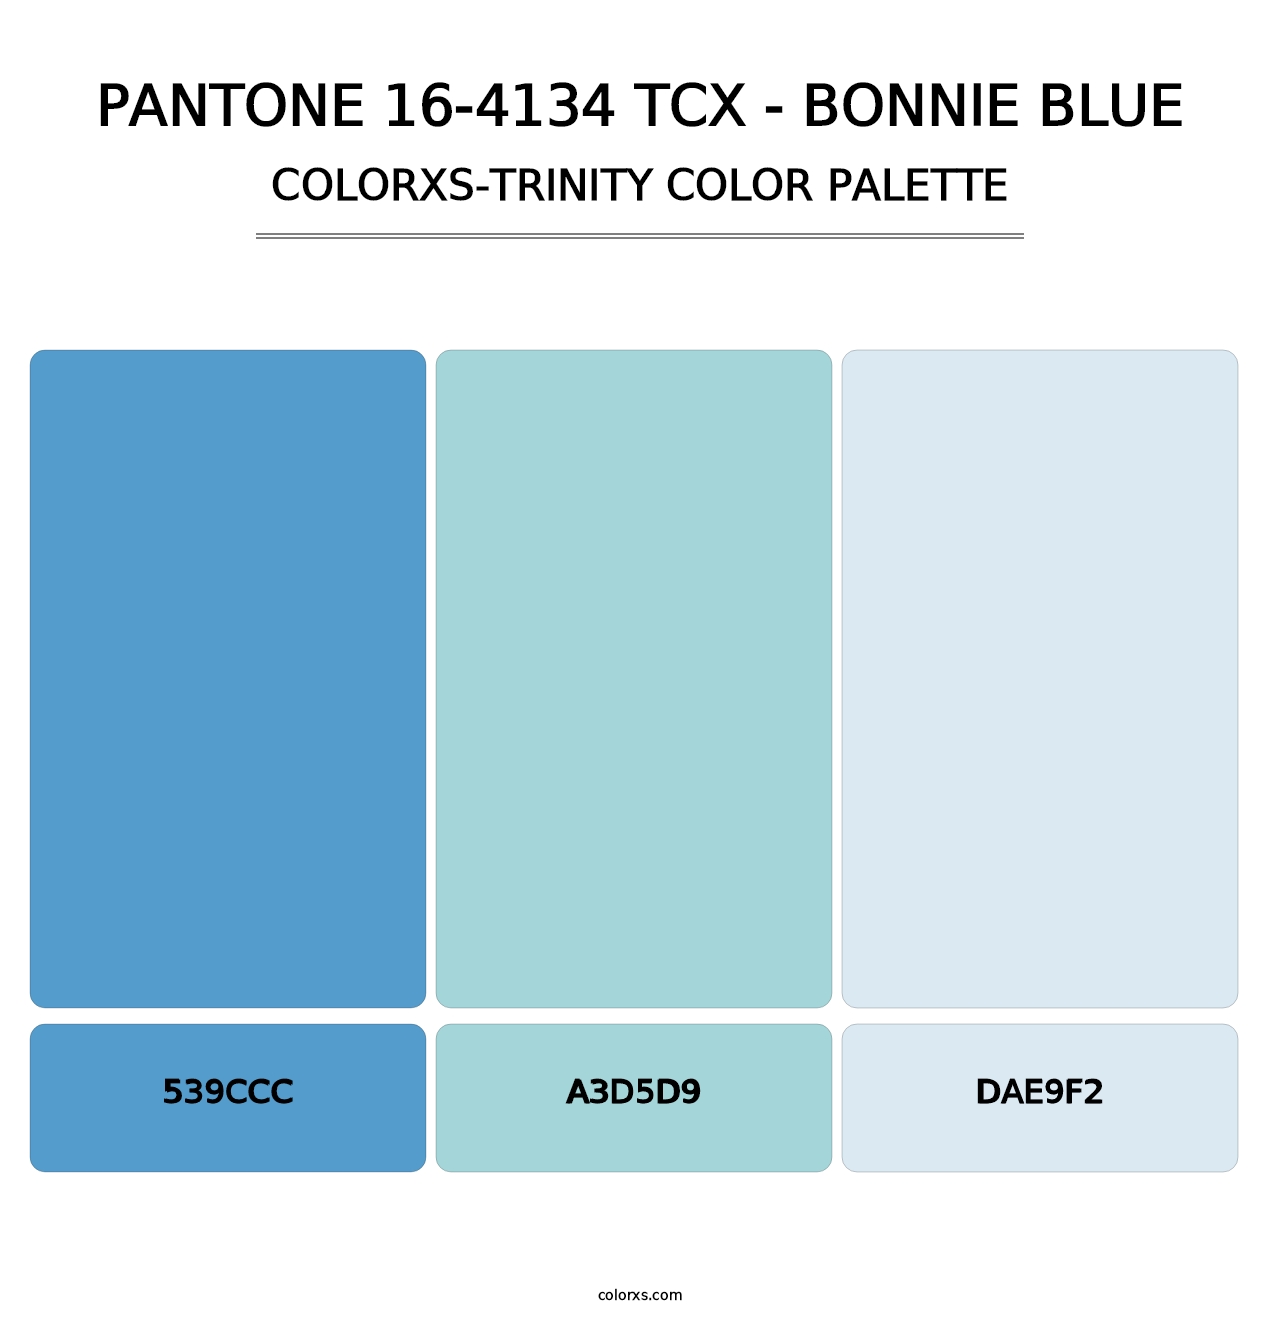 PANTONE 16-4134 TCX - Bonnie Blue - Colorxs Trinity Palette